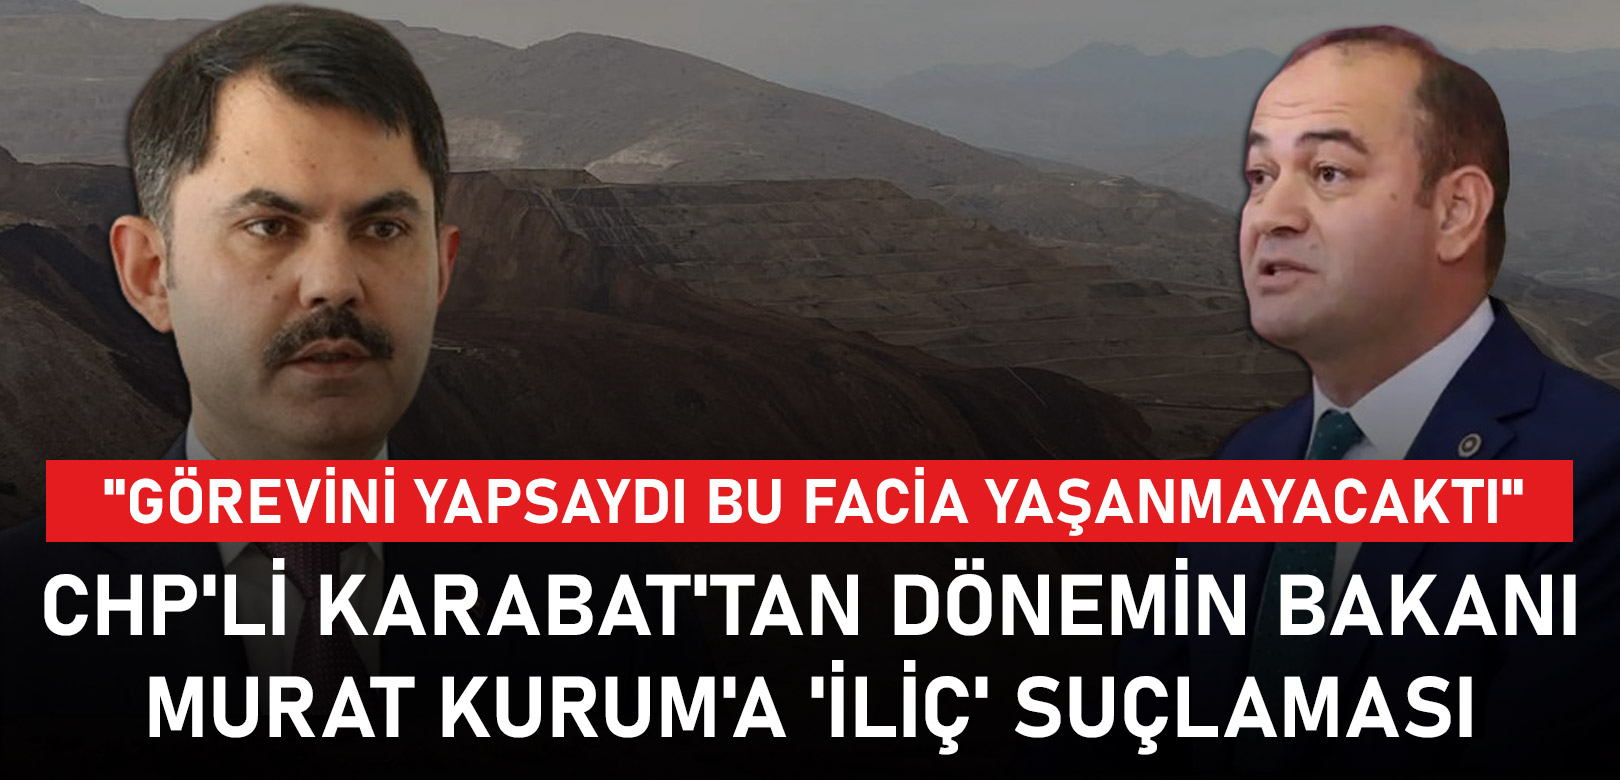 CHP'li Karabat'tan dönemin bakanı Murat Kurum'a 'İliç' suçlaması